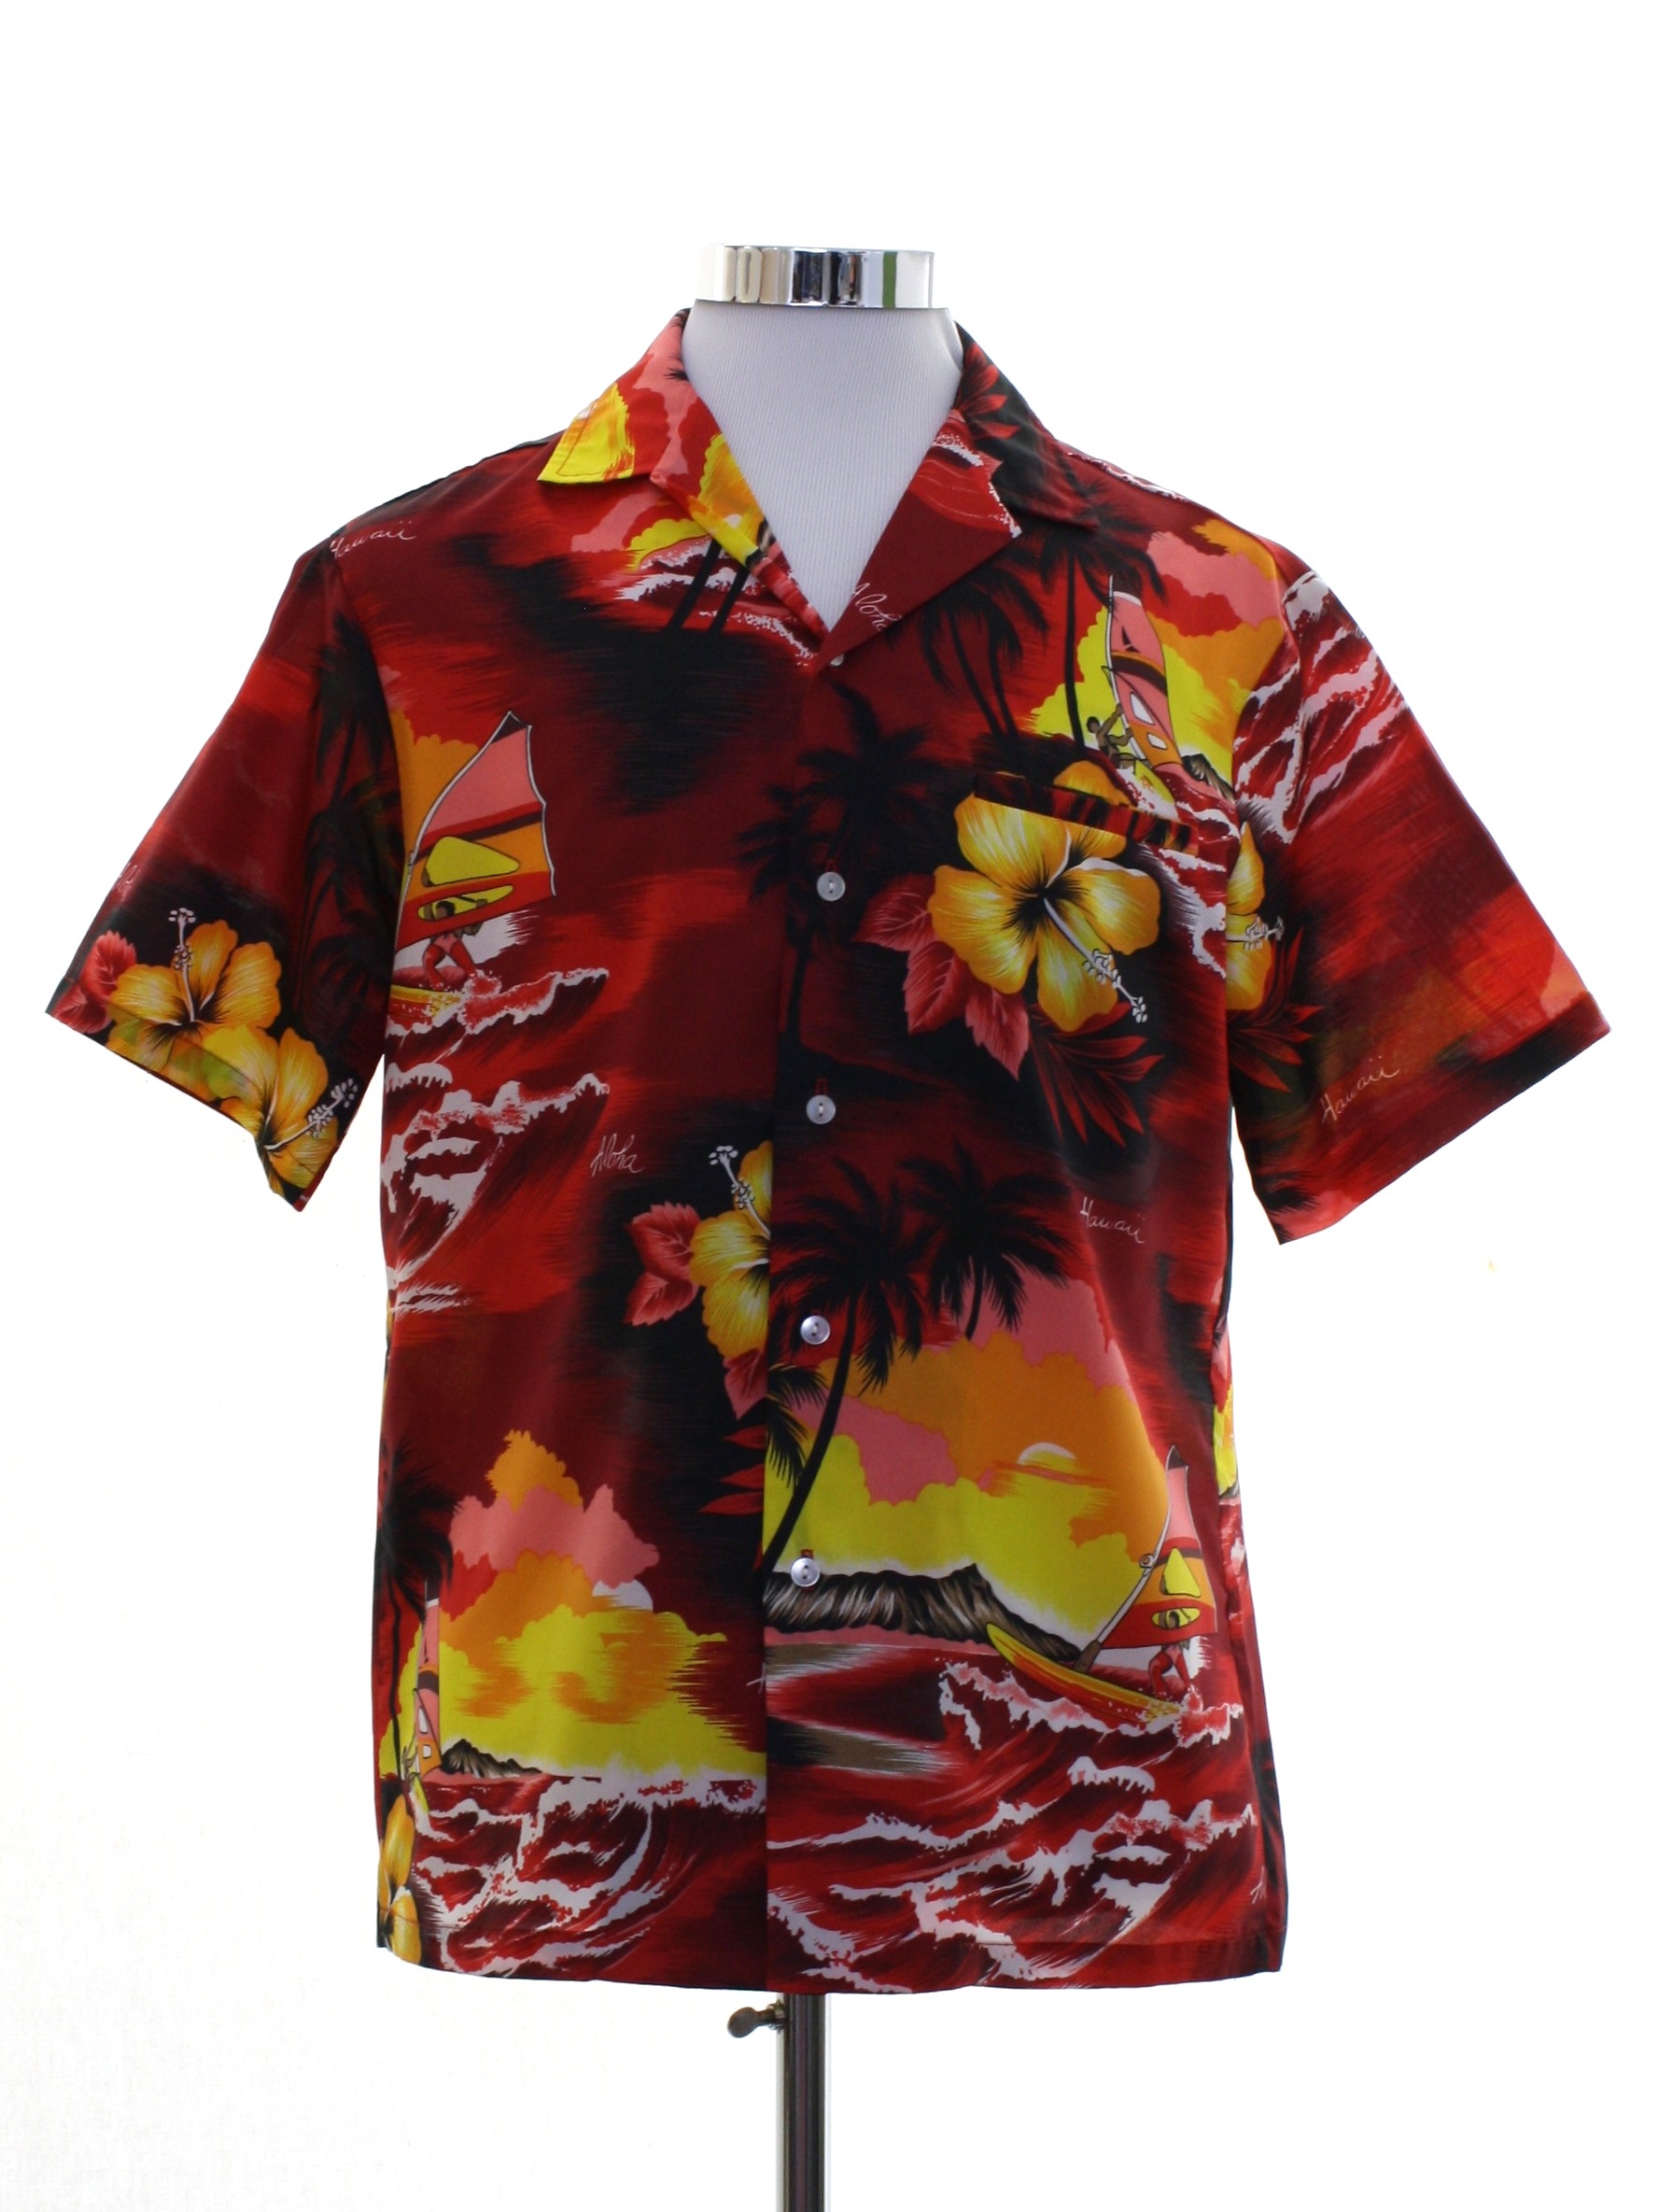 Retro 70's Hawaiian Shirt: Late 70s or Early 80s -Kalena Fashions- Mens ...